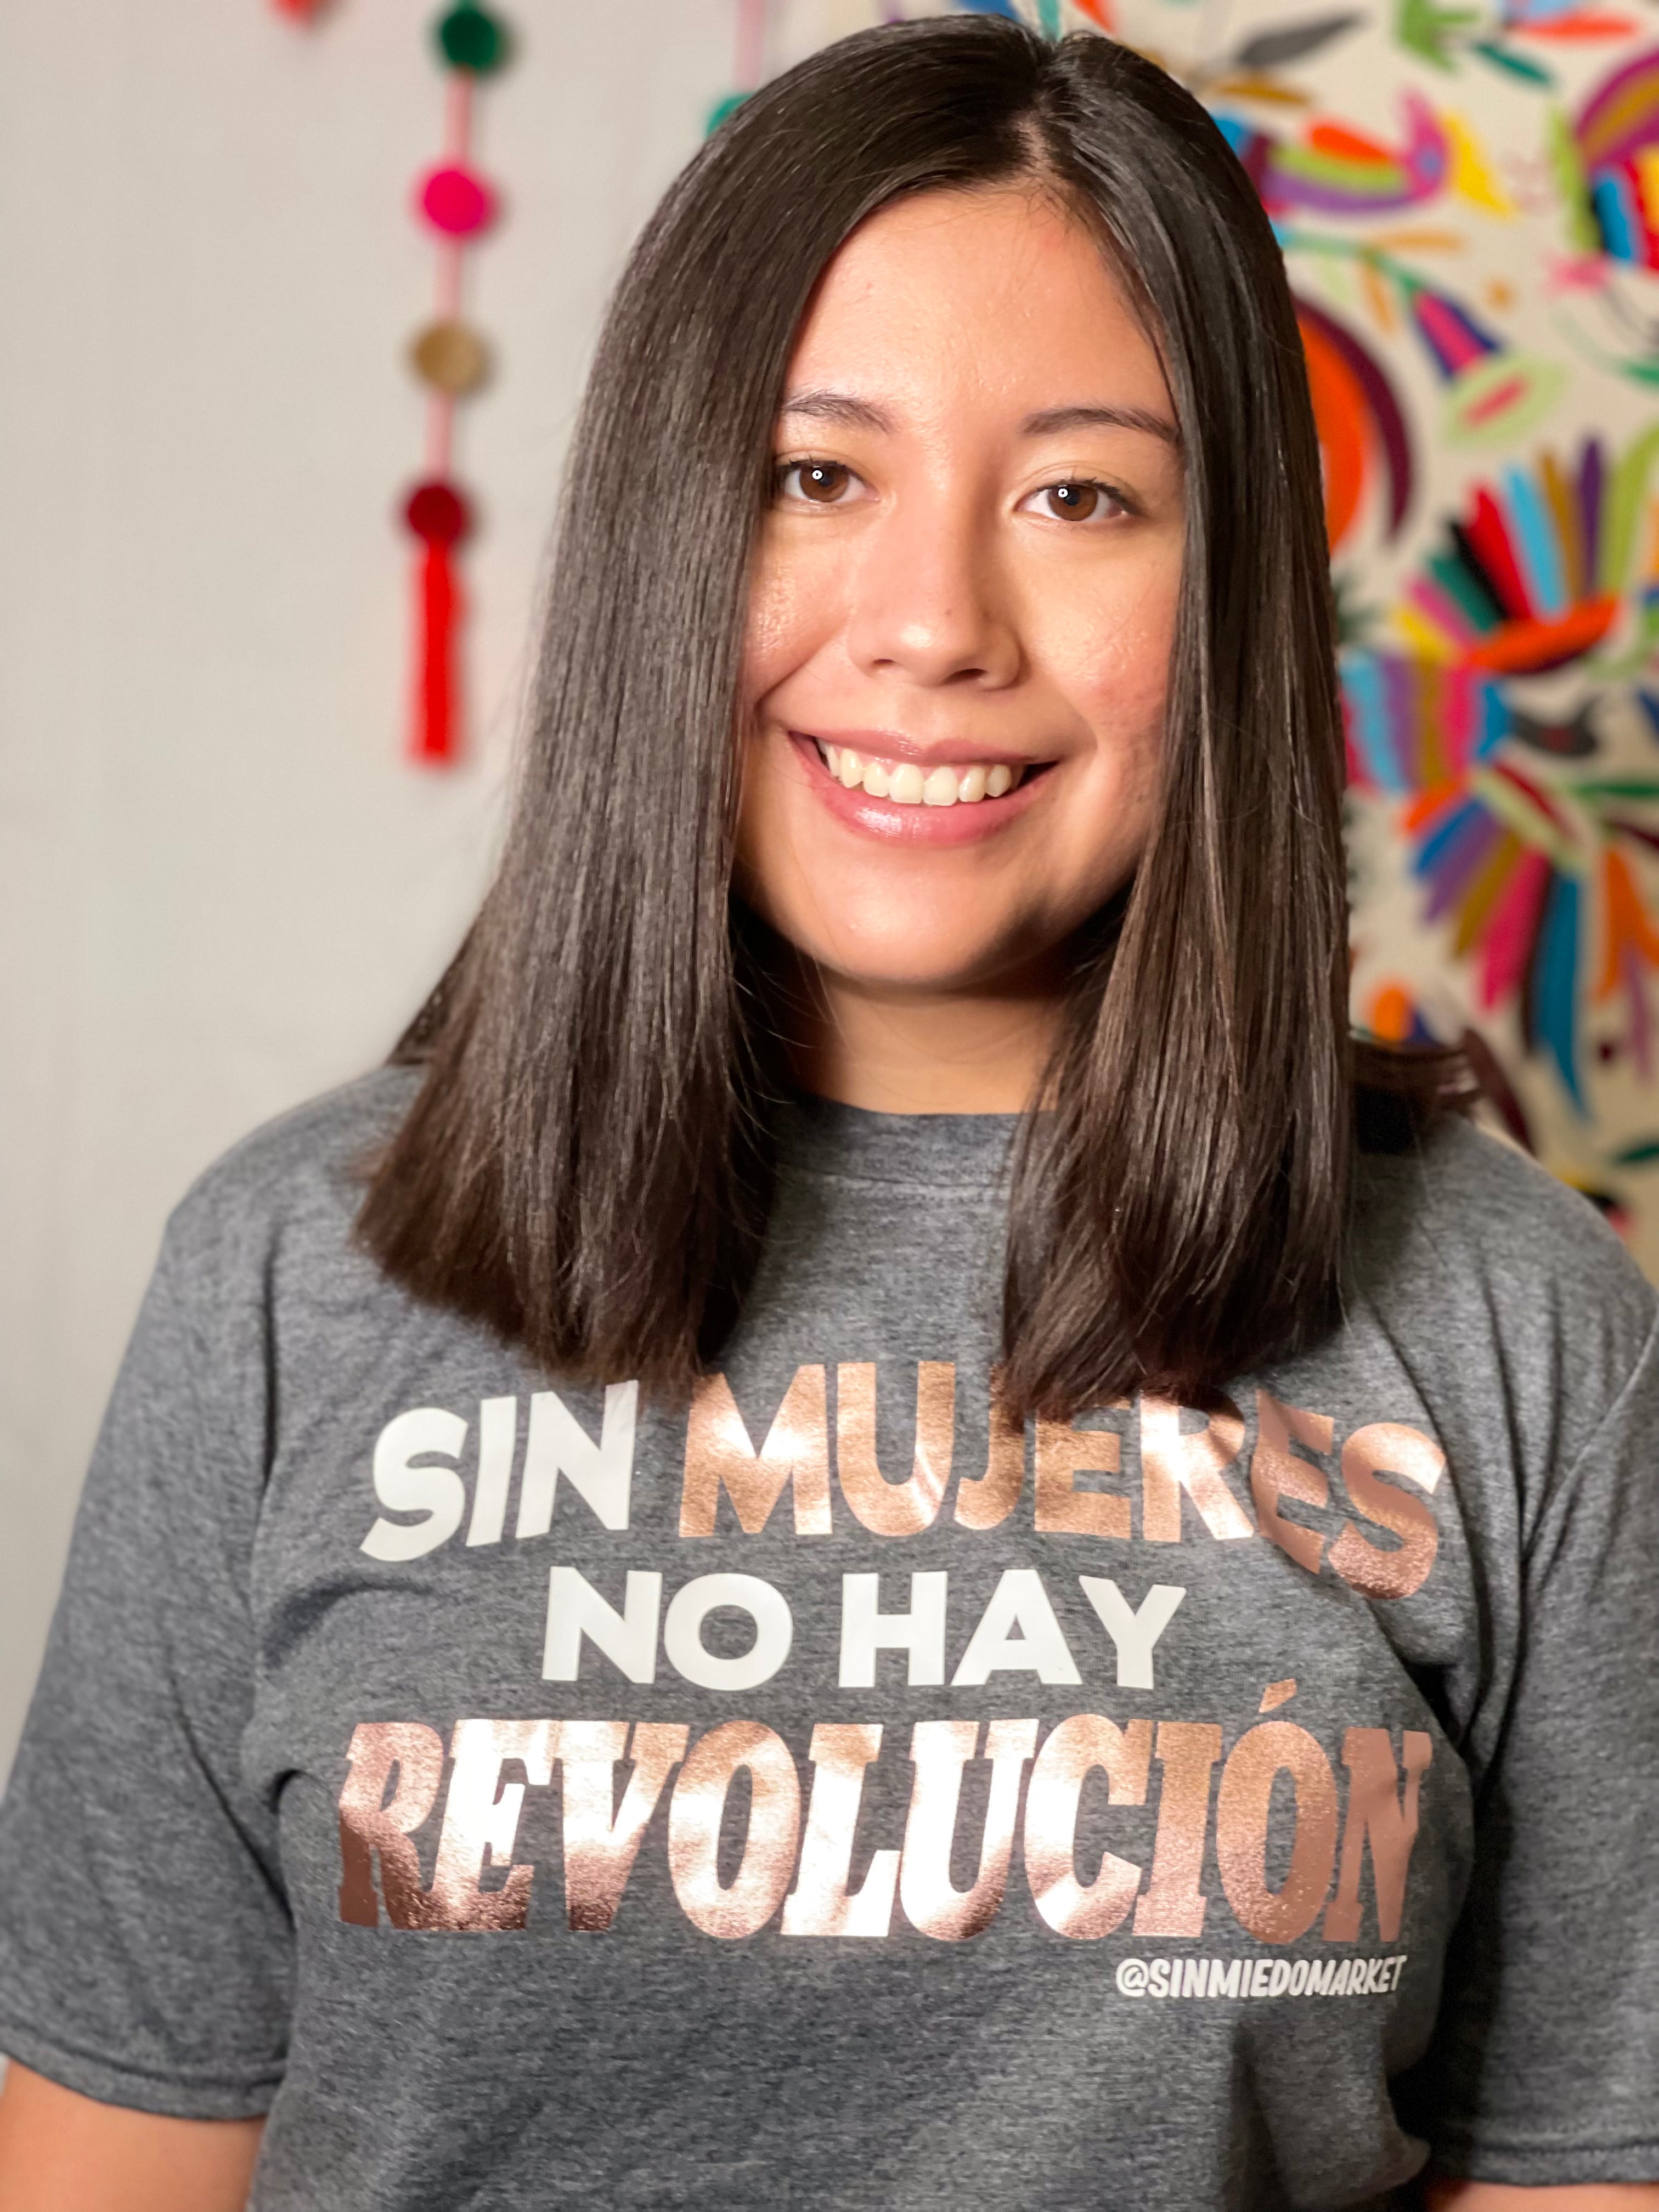 Sin Mujeres No Hay Revolución T-shirt